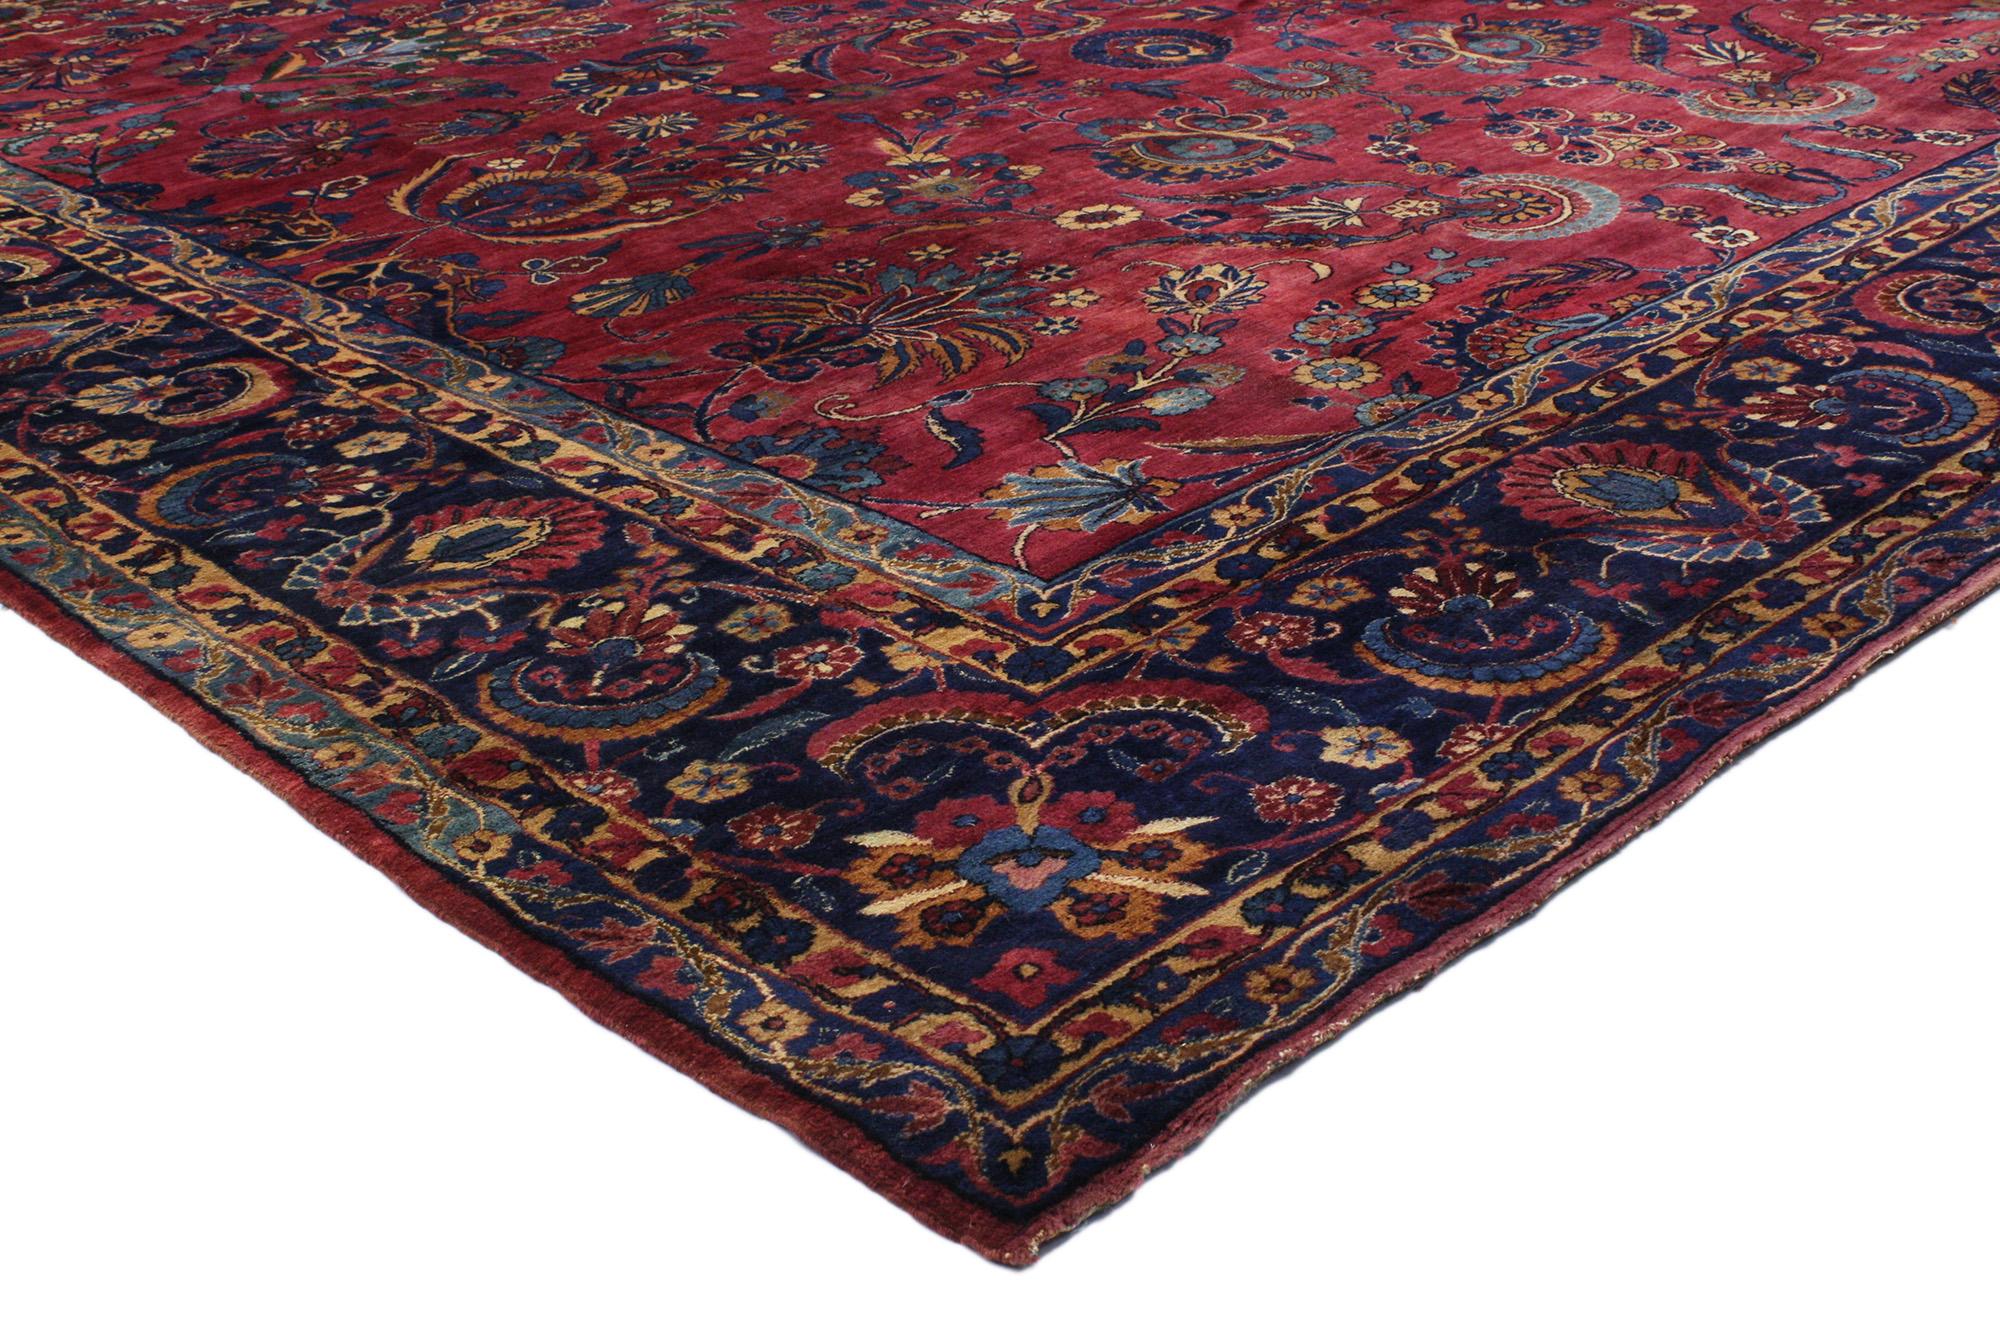 76761 Tapis persan antique Yazd, 10'10 x 15'01. Les tapis de Yazd, originaires de la ville de Yazd, dans le centre de l'Iran, sont réputés pour leur qualité exceptionnelle, leurs motifs complexes et leur artisanat raffiné. Fabriqués en laine de